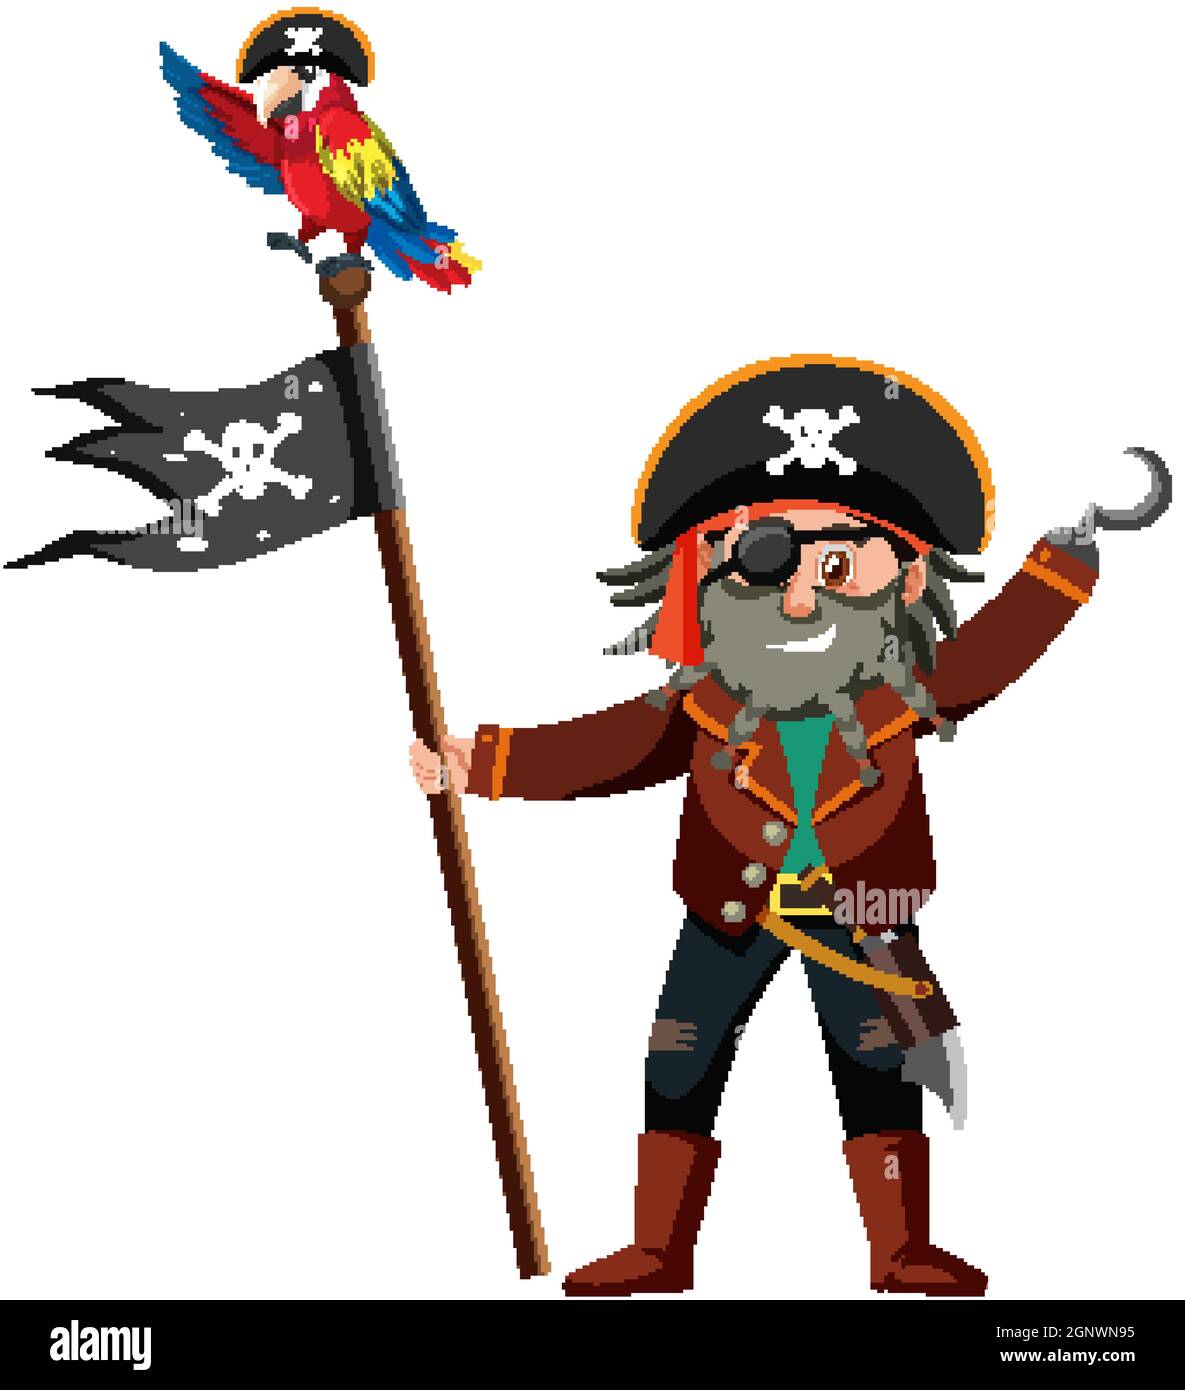 Personnage de dessin animé pirate du Capitaine crochet tenant le Jolly Roger isolé sur fond blanc d'illustration Illustration de Vecteur